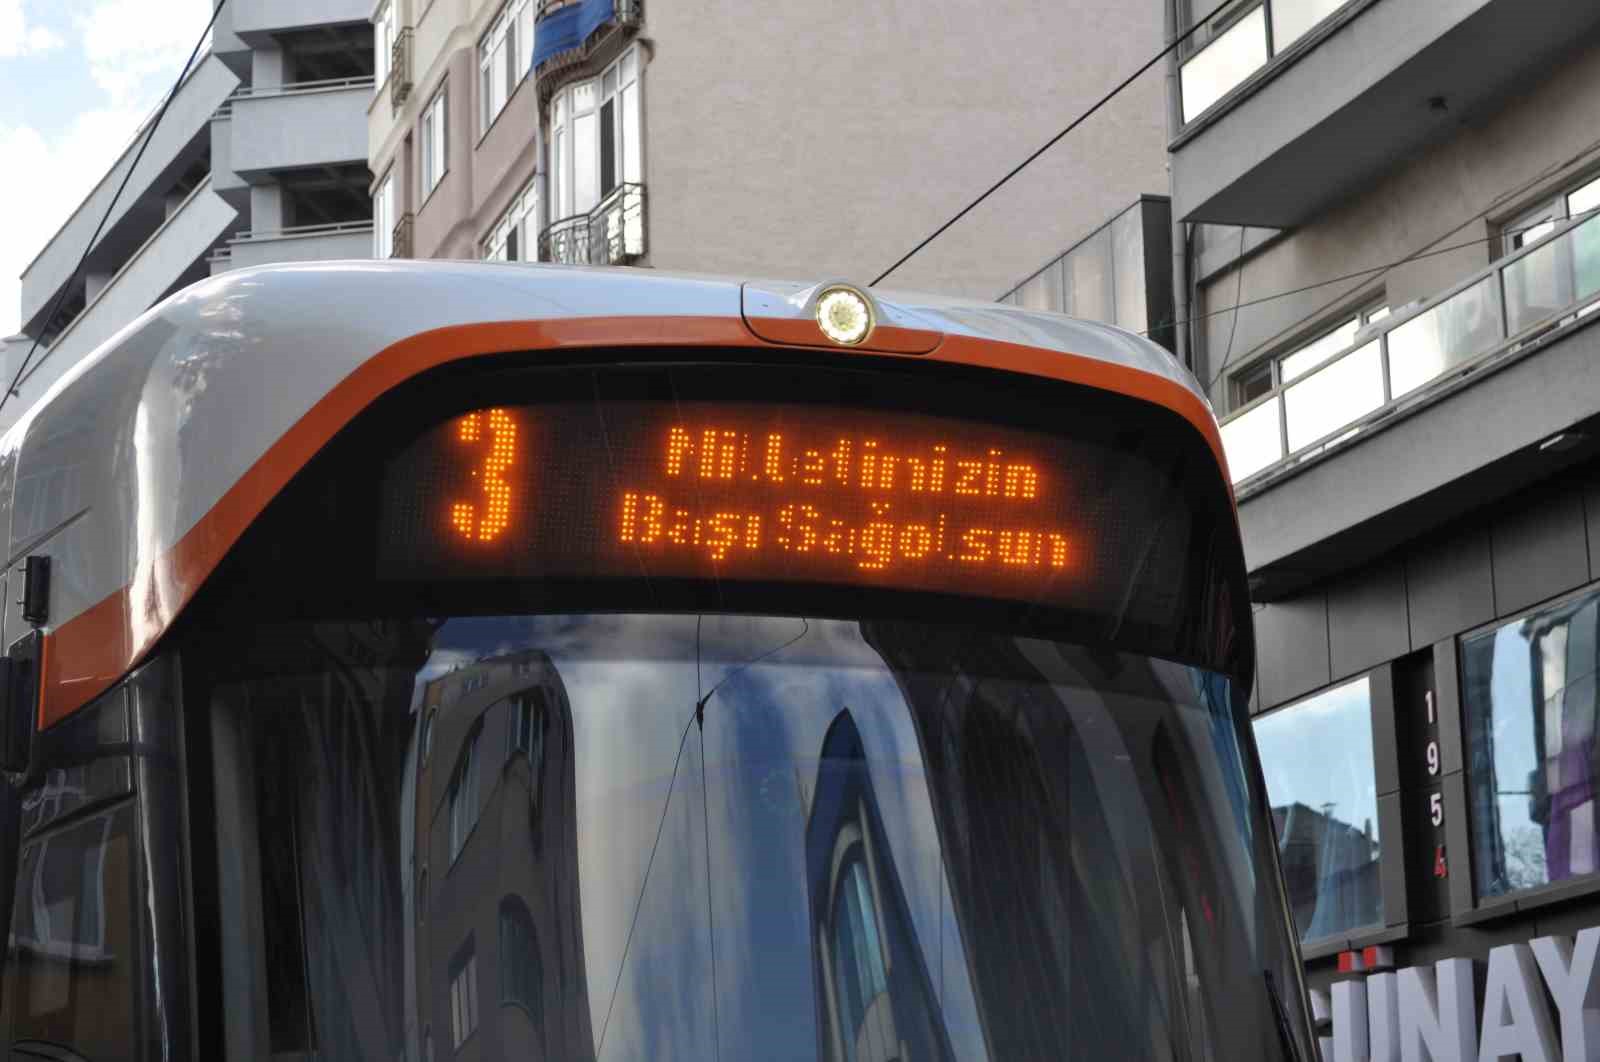 Tramvayların led ekranında ‘Milletimizin başı sağ olsun’ yazısı yer aldı